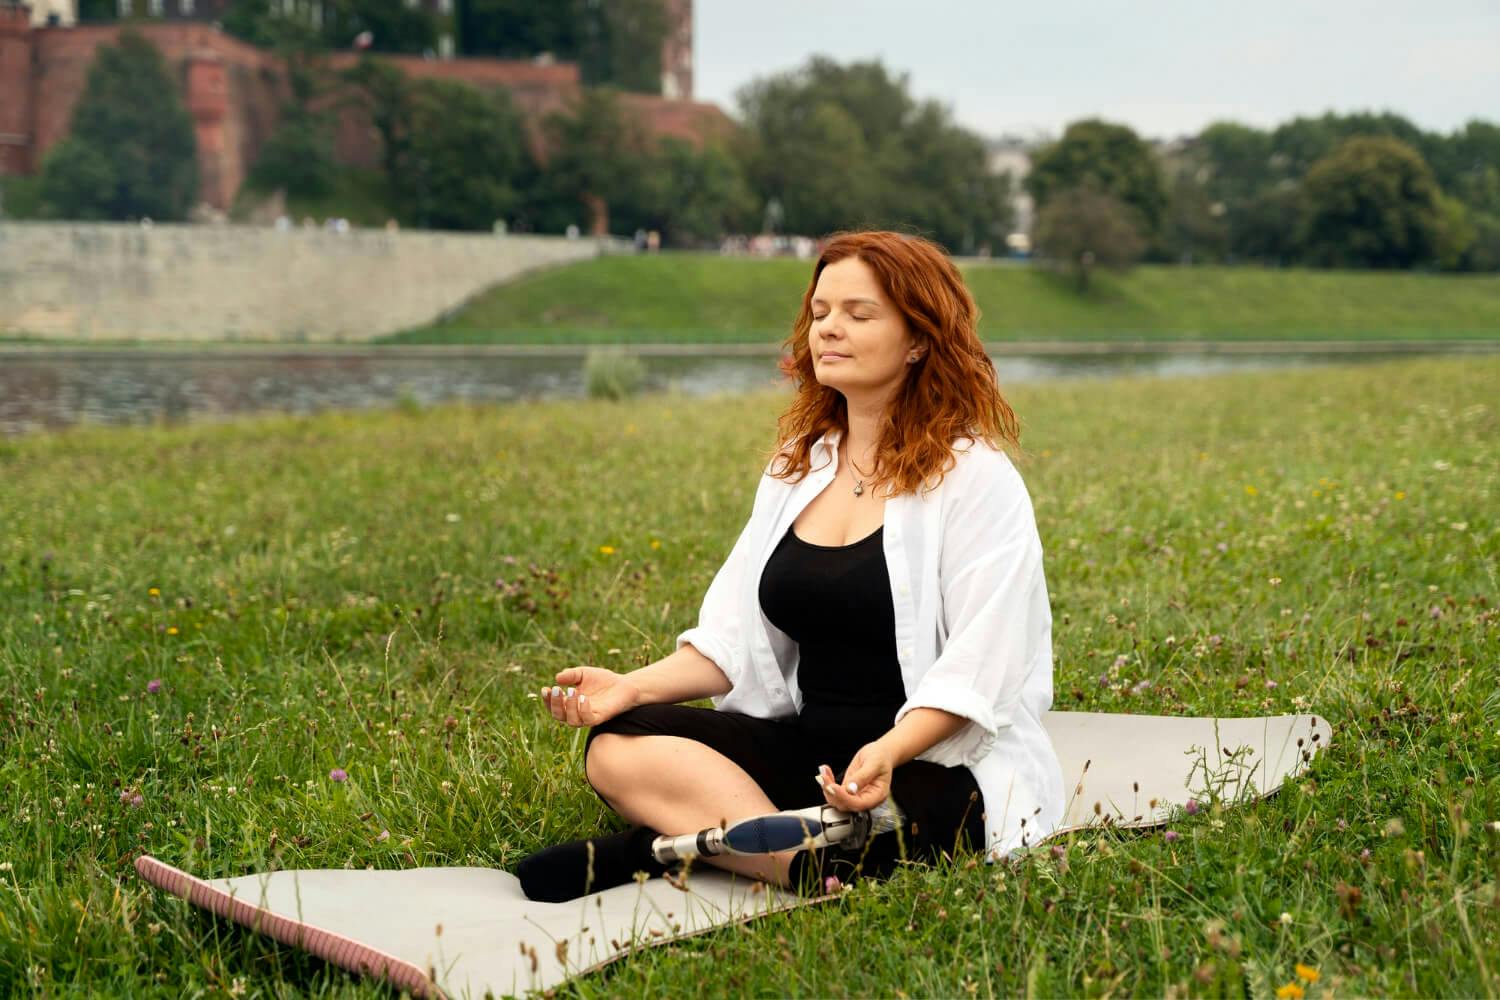 Una persona meditando en un parque como parte de las técnicas de relajación para mejorar su autocontrol emocional y reducir la ansiedad.